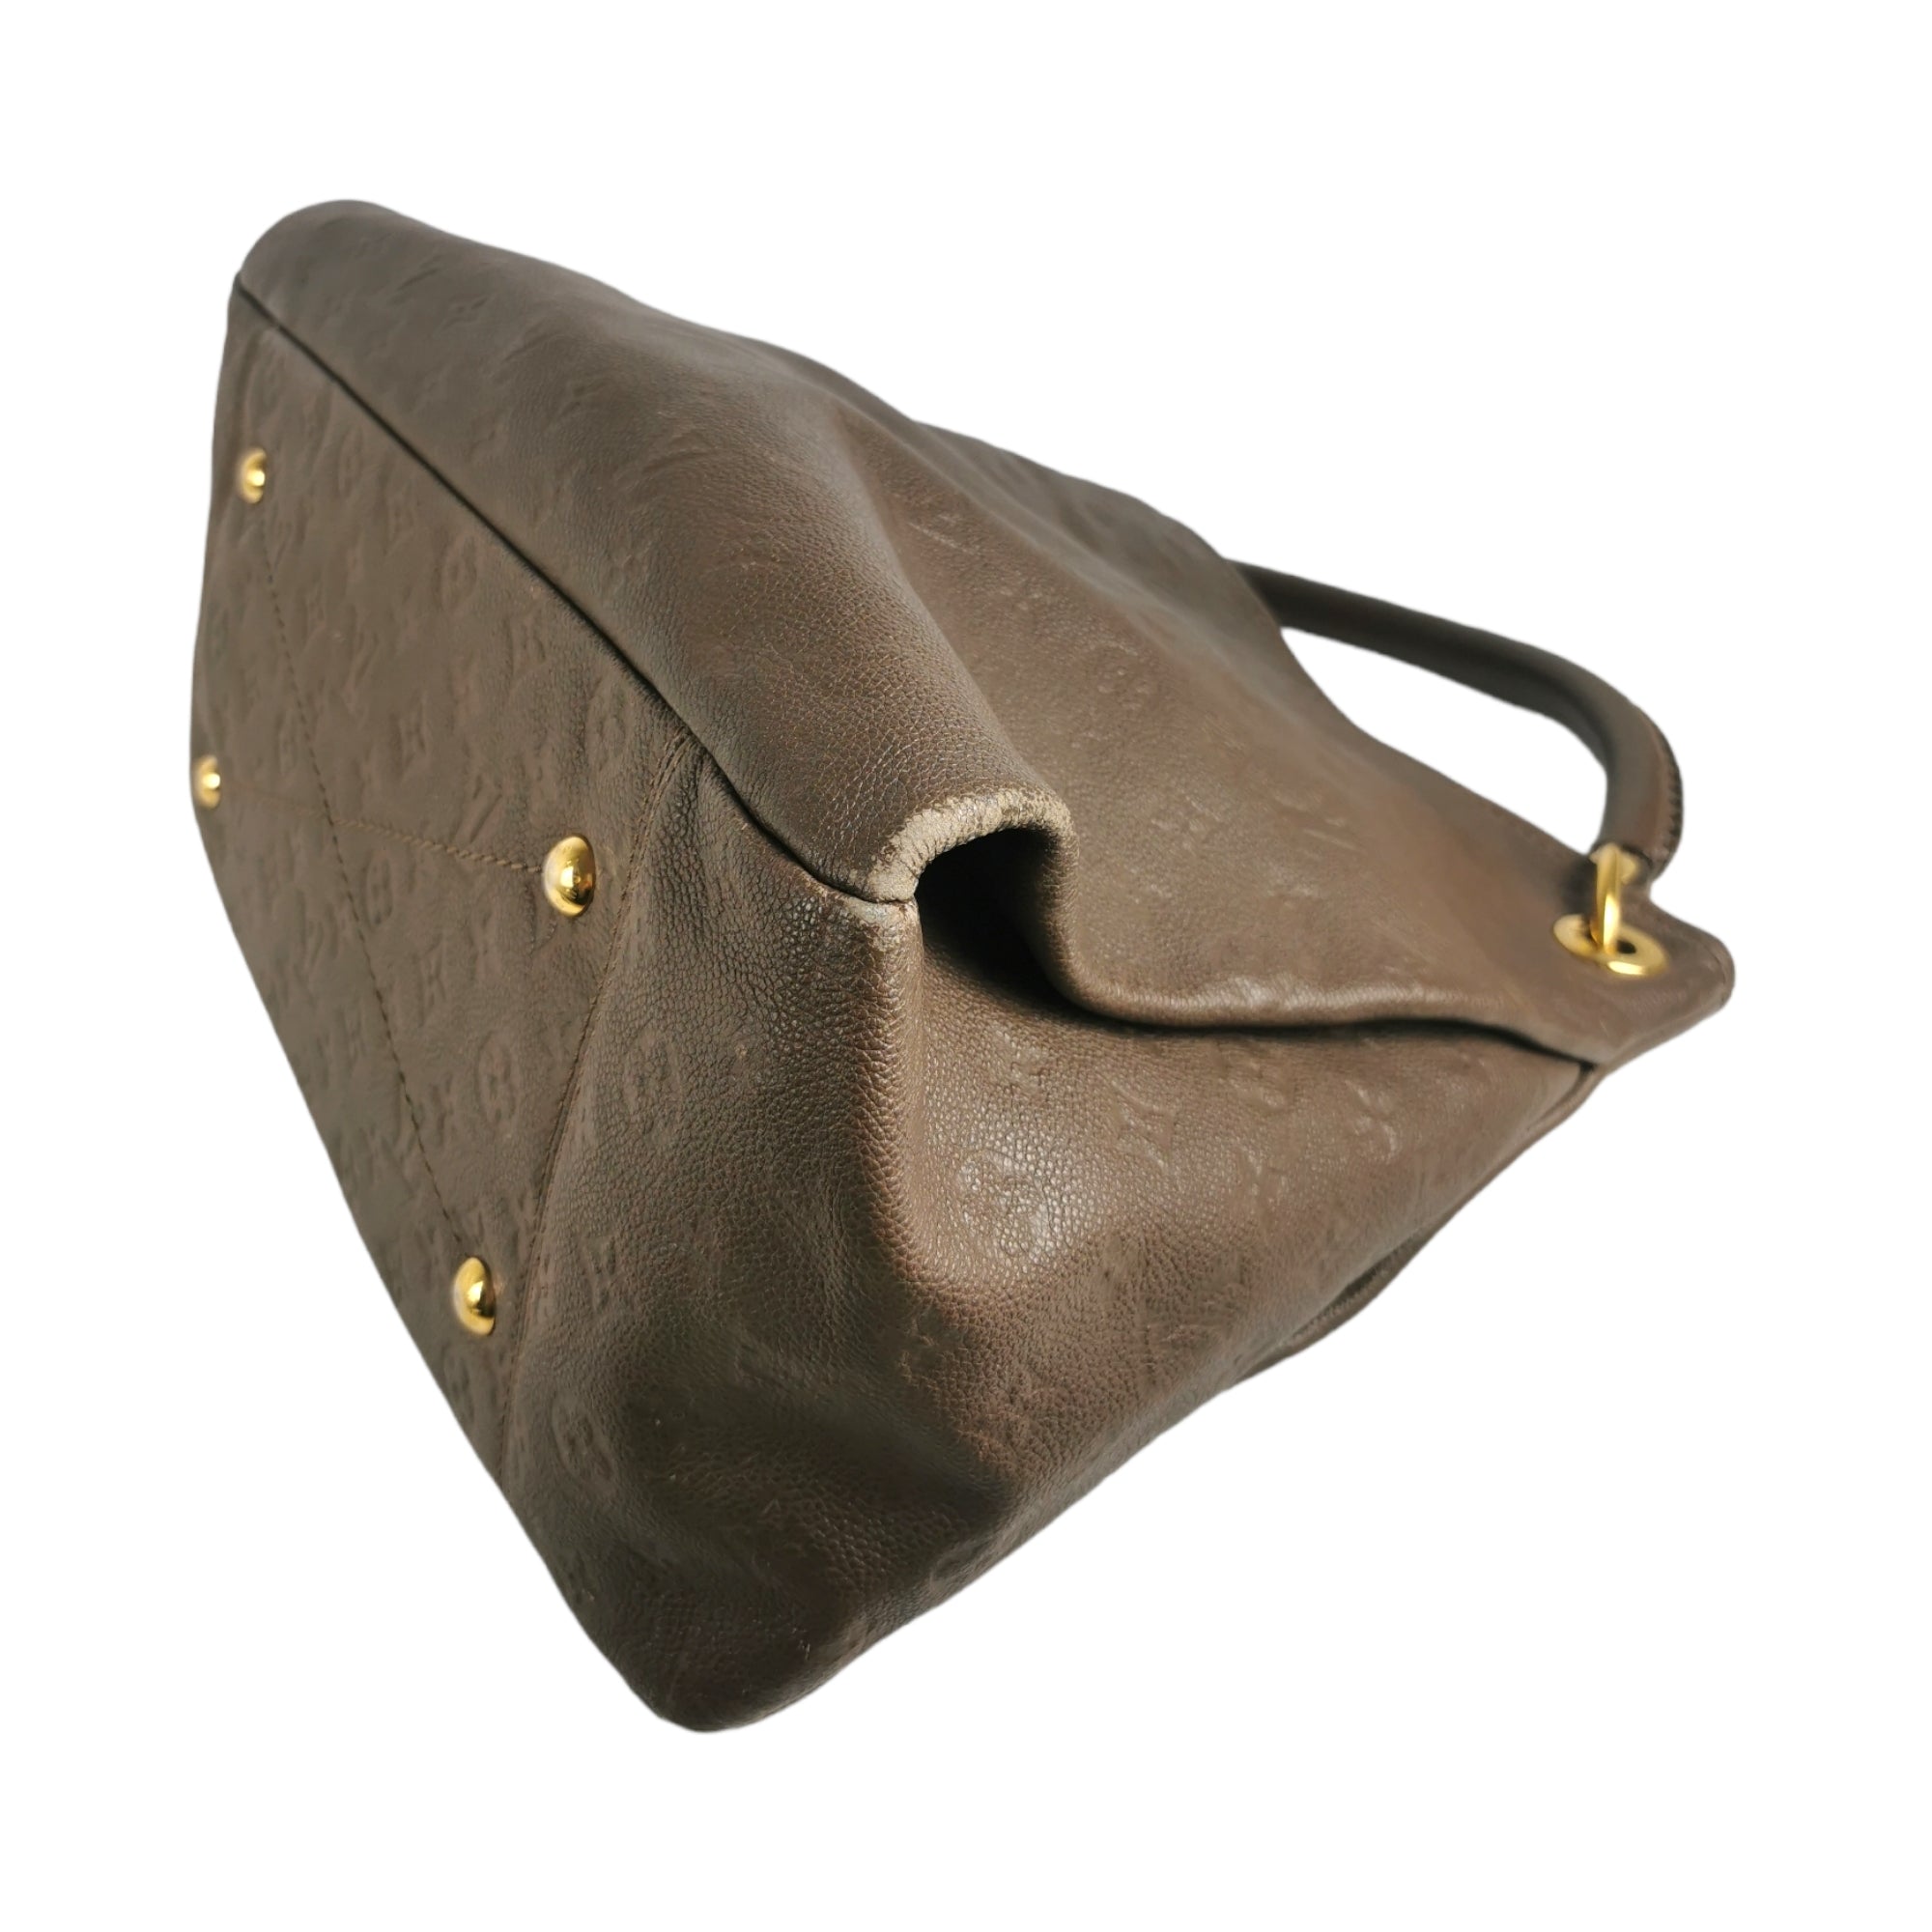 Authentic Louis Vuitton Artsy MM Ombré Brown Empreinte Leather Handbag  & Dustbag